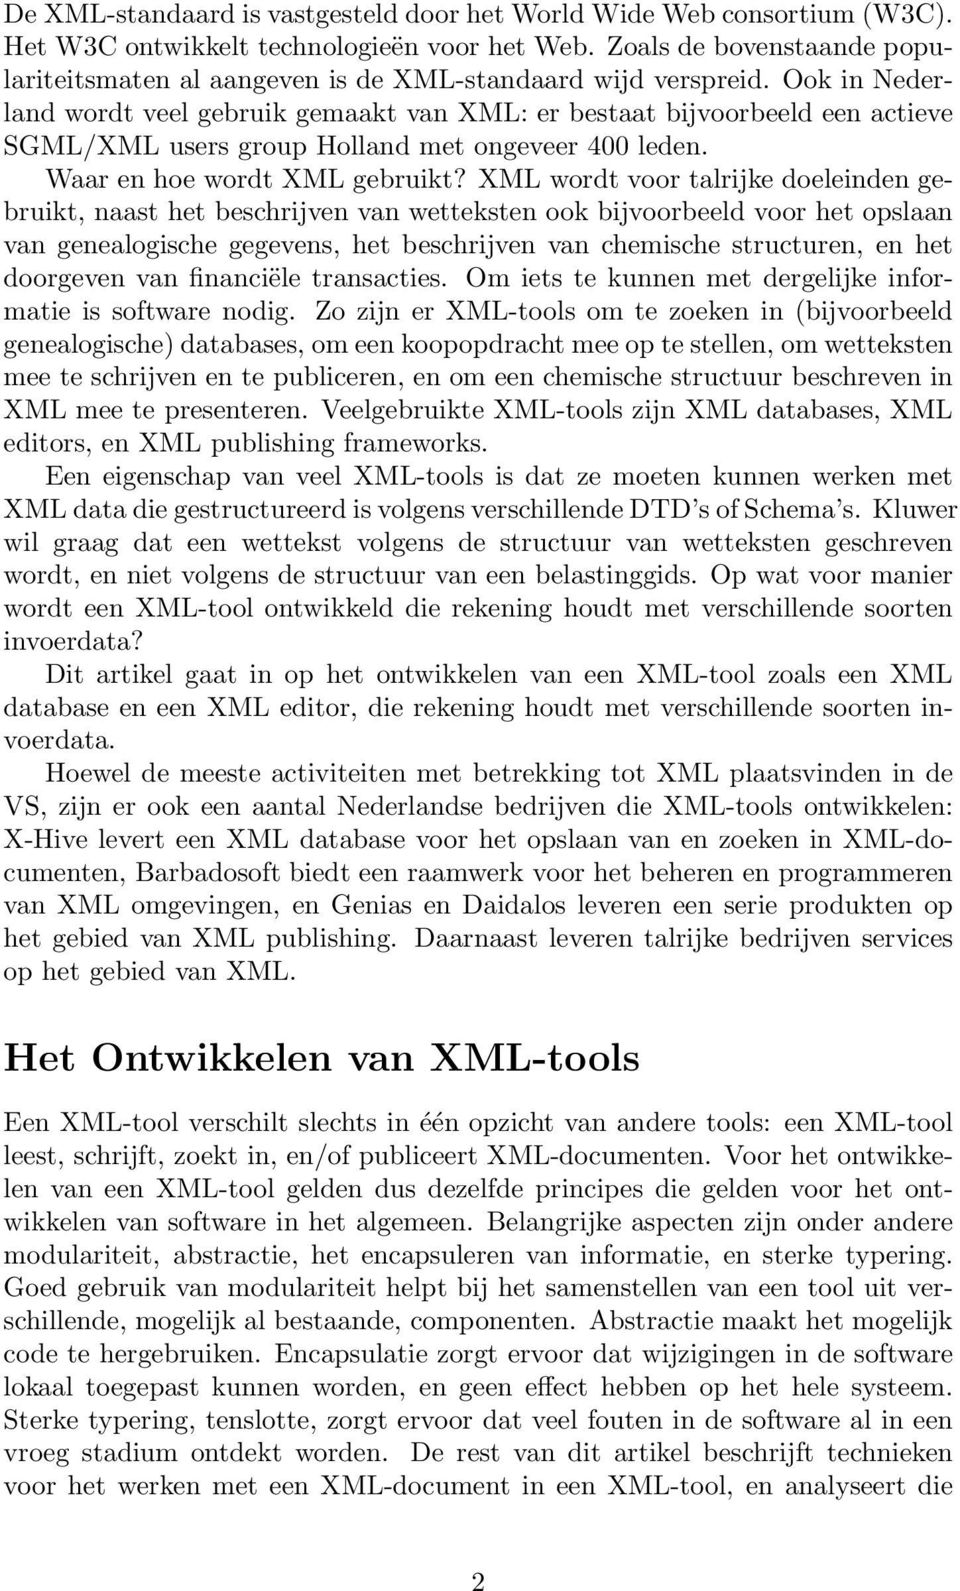 Ook in Nederland wordt veel gebruik gemaakt van XML: er bestaat bijvoorbeeld een actieve SGML/XML users group Holland met ongeveer 400 leden. Waar en hoe wordt XML gebruikt?